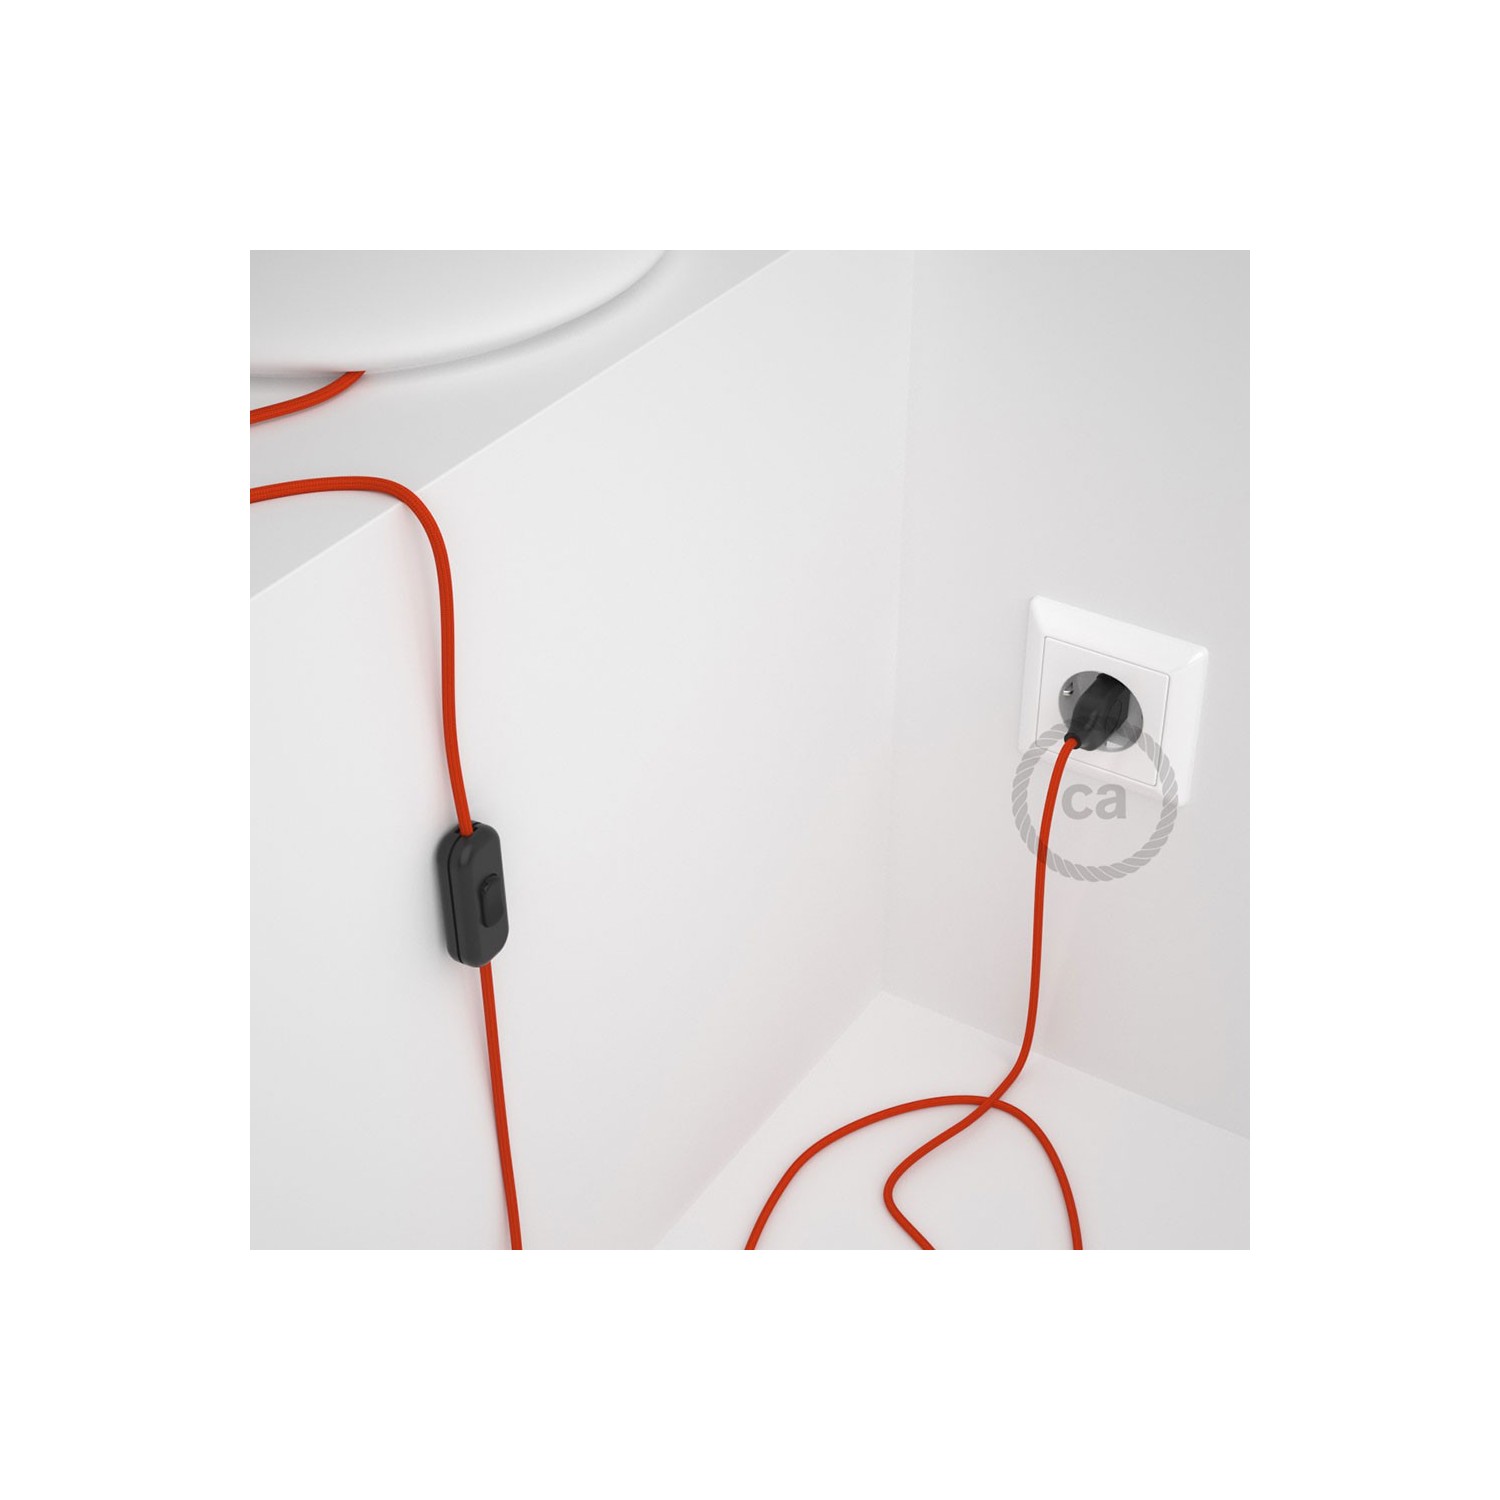 Cordon pour lampe, câble RM15 Effet Soie Orange 1,80 m. Choisissez la couleur de la fiche et de l'interrupteur!